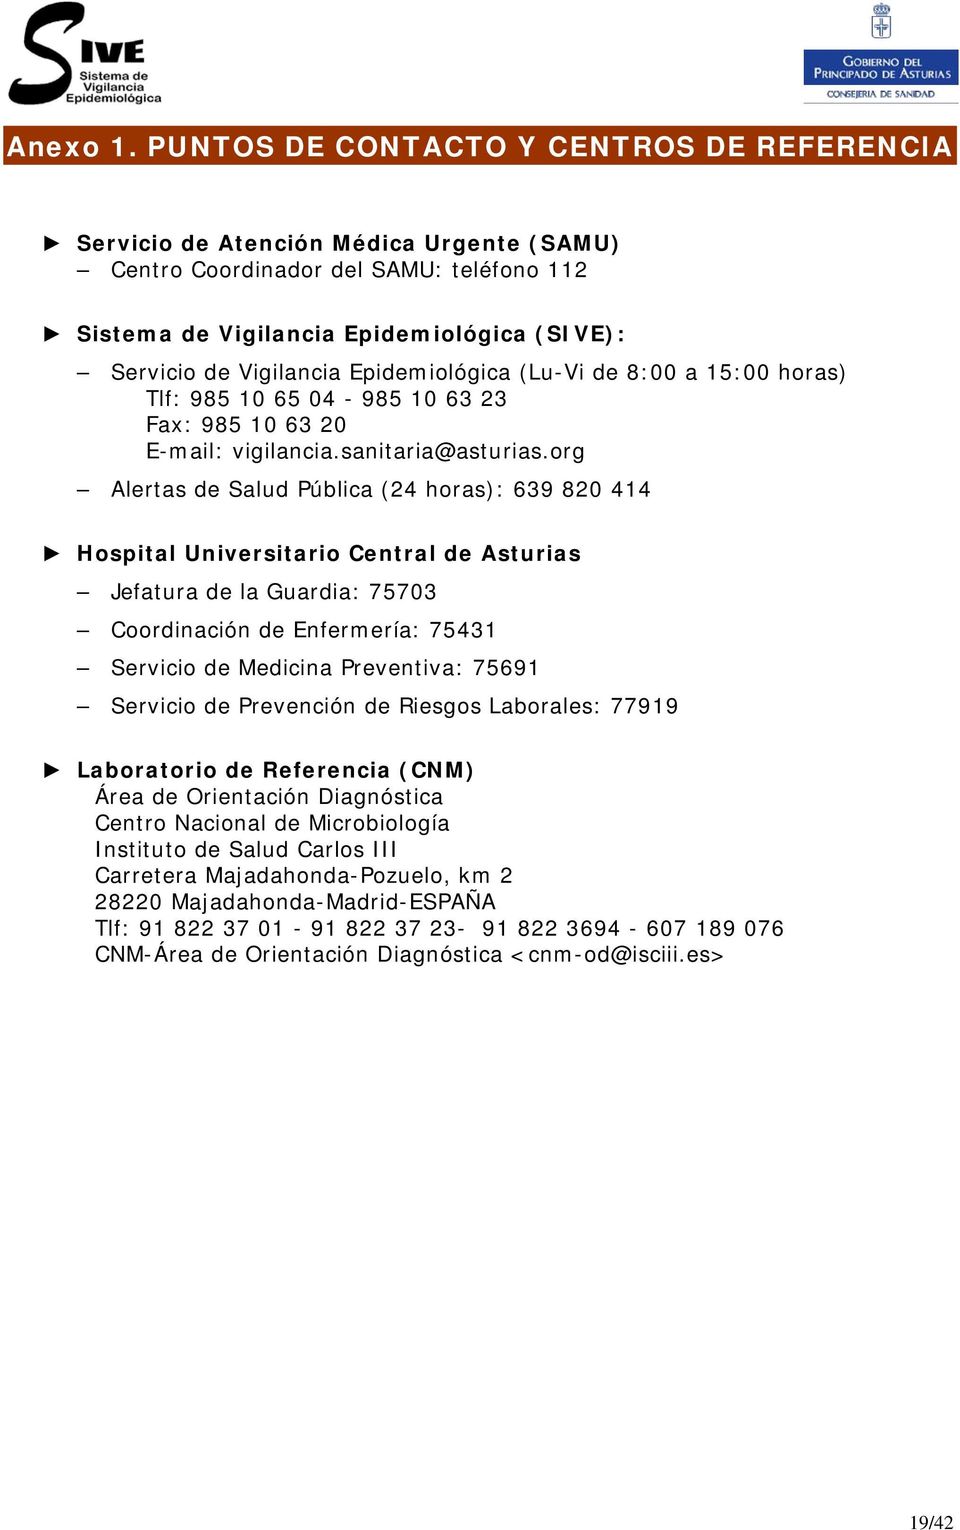 Epidemiológica (Lu-Vi de 8:00 a 15:00 horas) Tlf: 985 10 65 04-985 10 63 23 Fax: 985 10 63 20 E-mail: vigilancia.sanitaria@asturias.